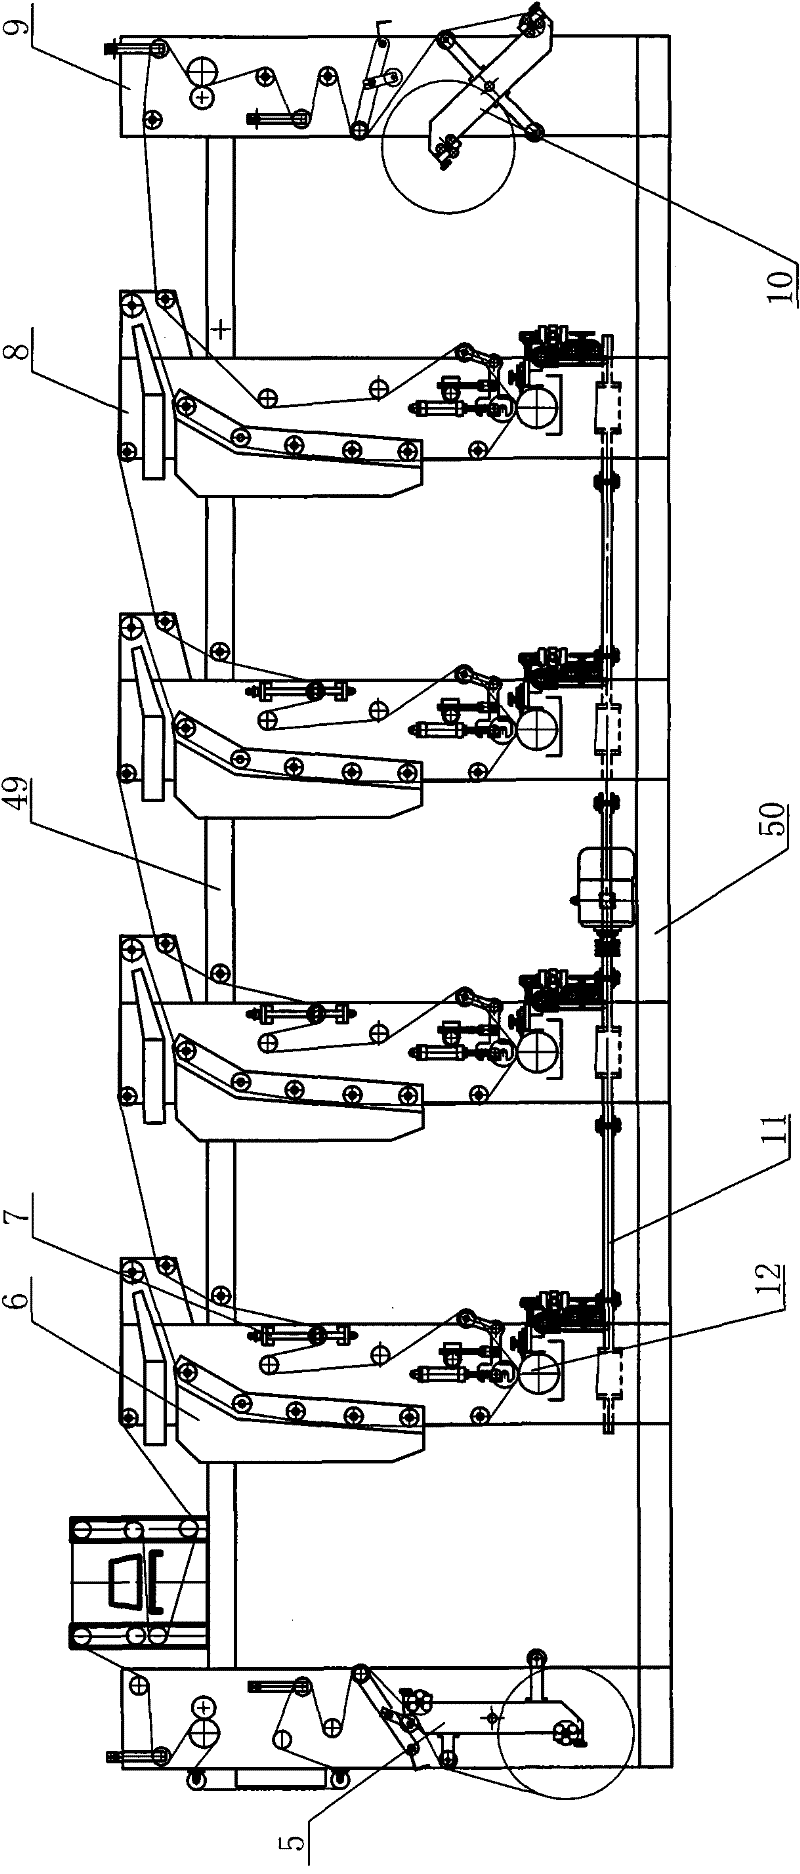 Gravure printing machine